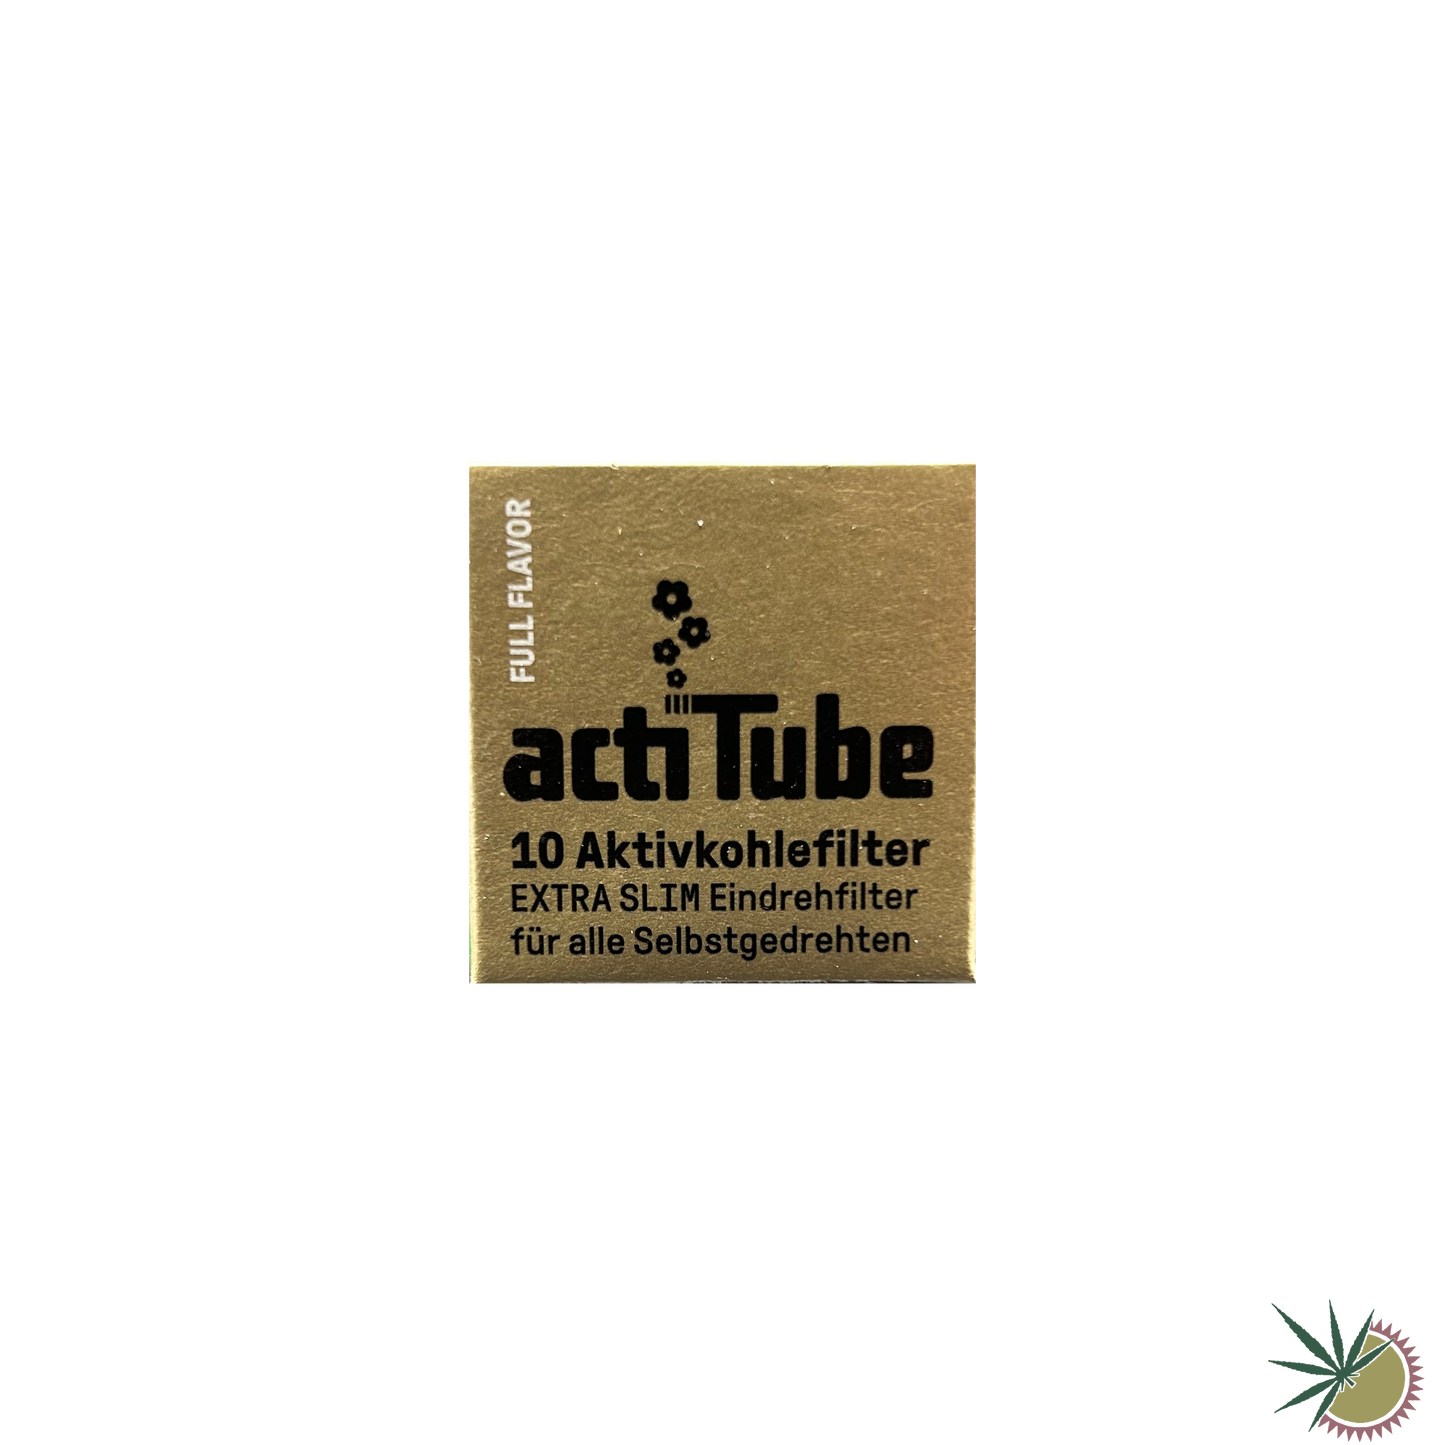 ActiTube Slim Aktivkohlefilter Ø6mm 1 Packung á 10 Stück